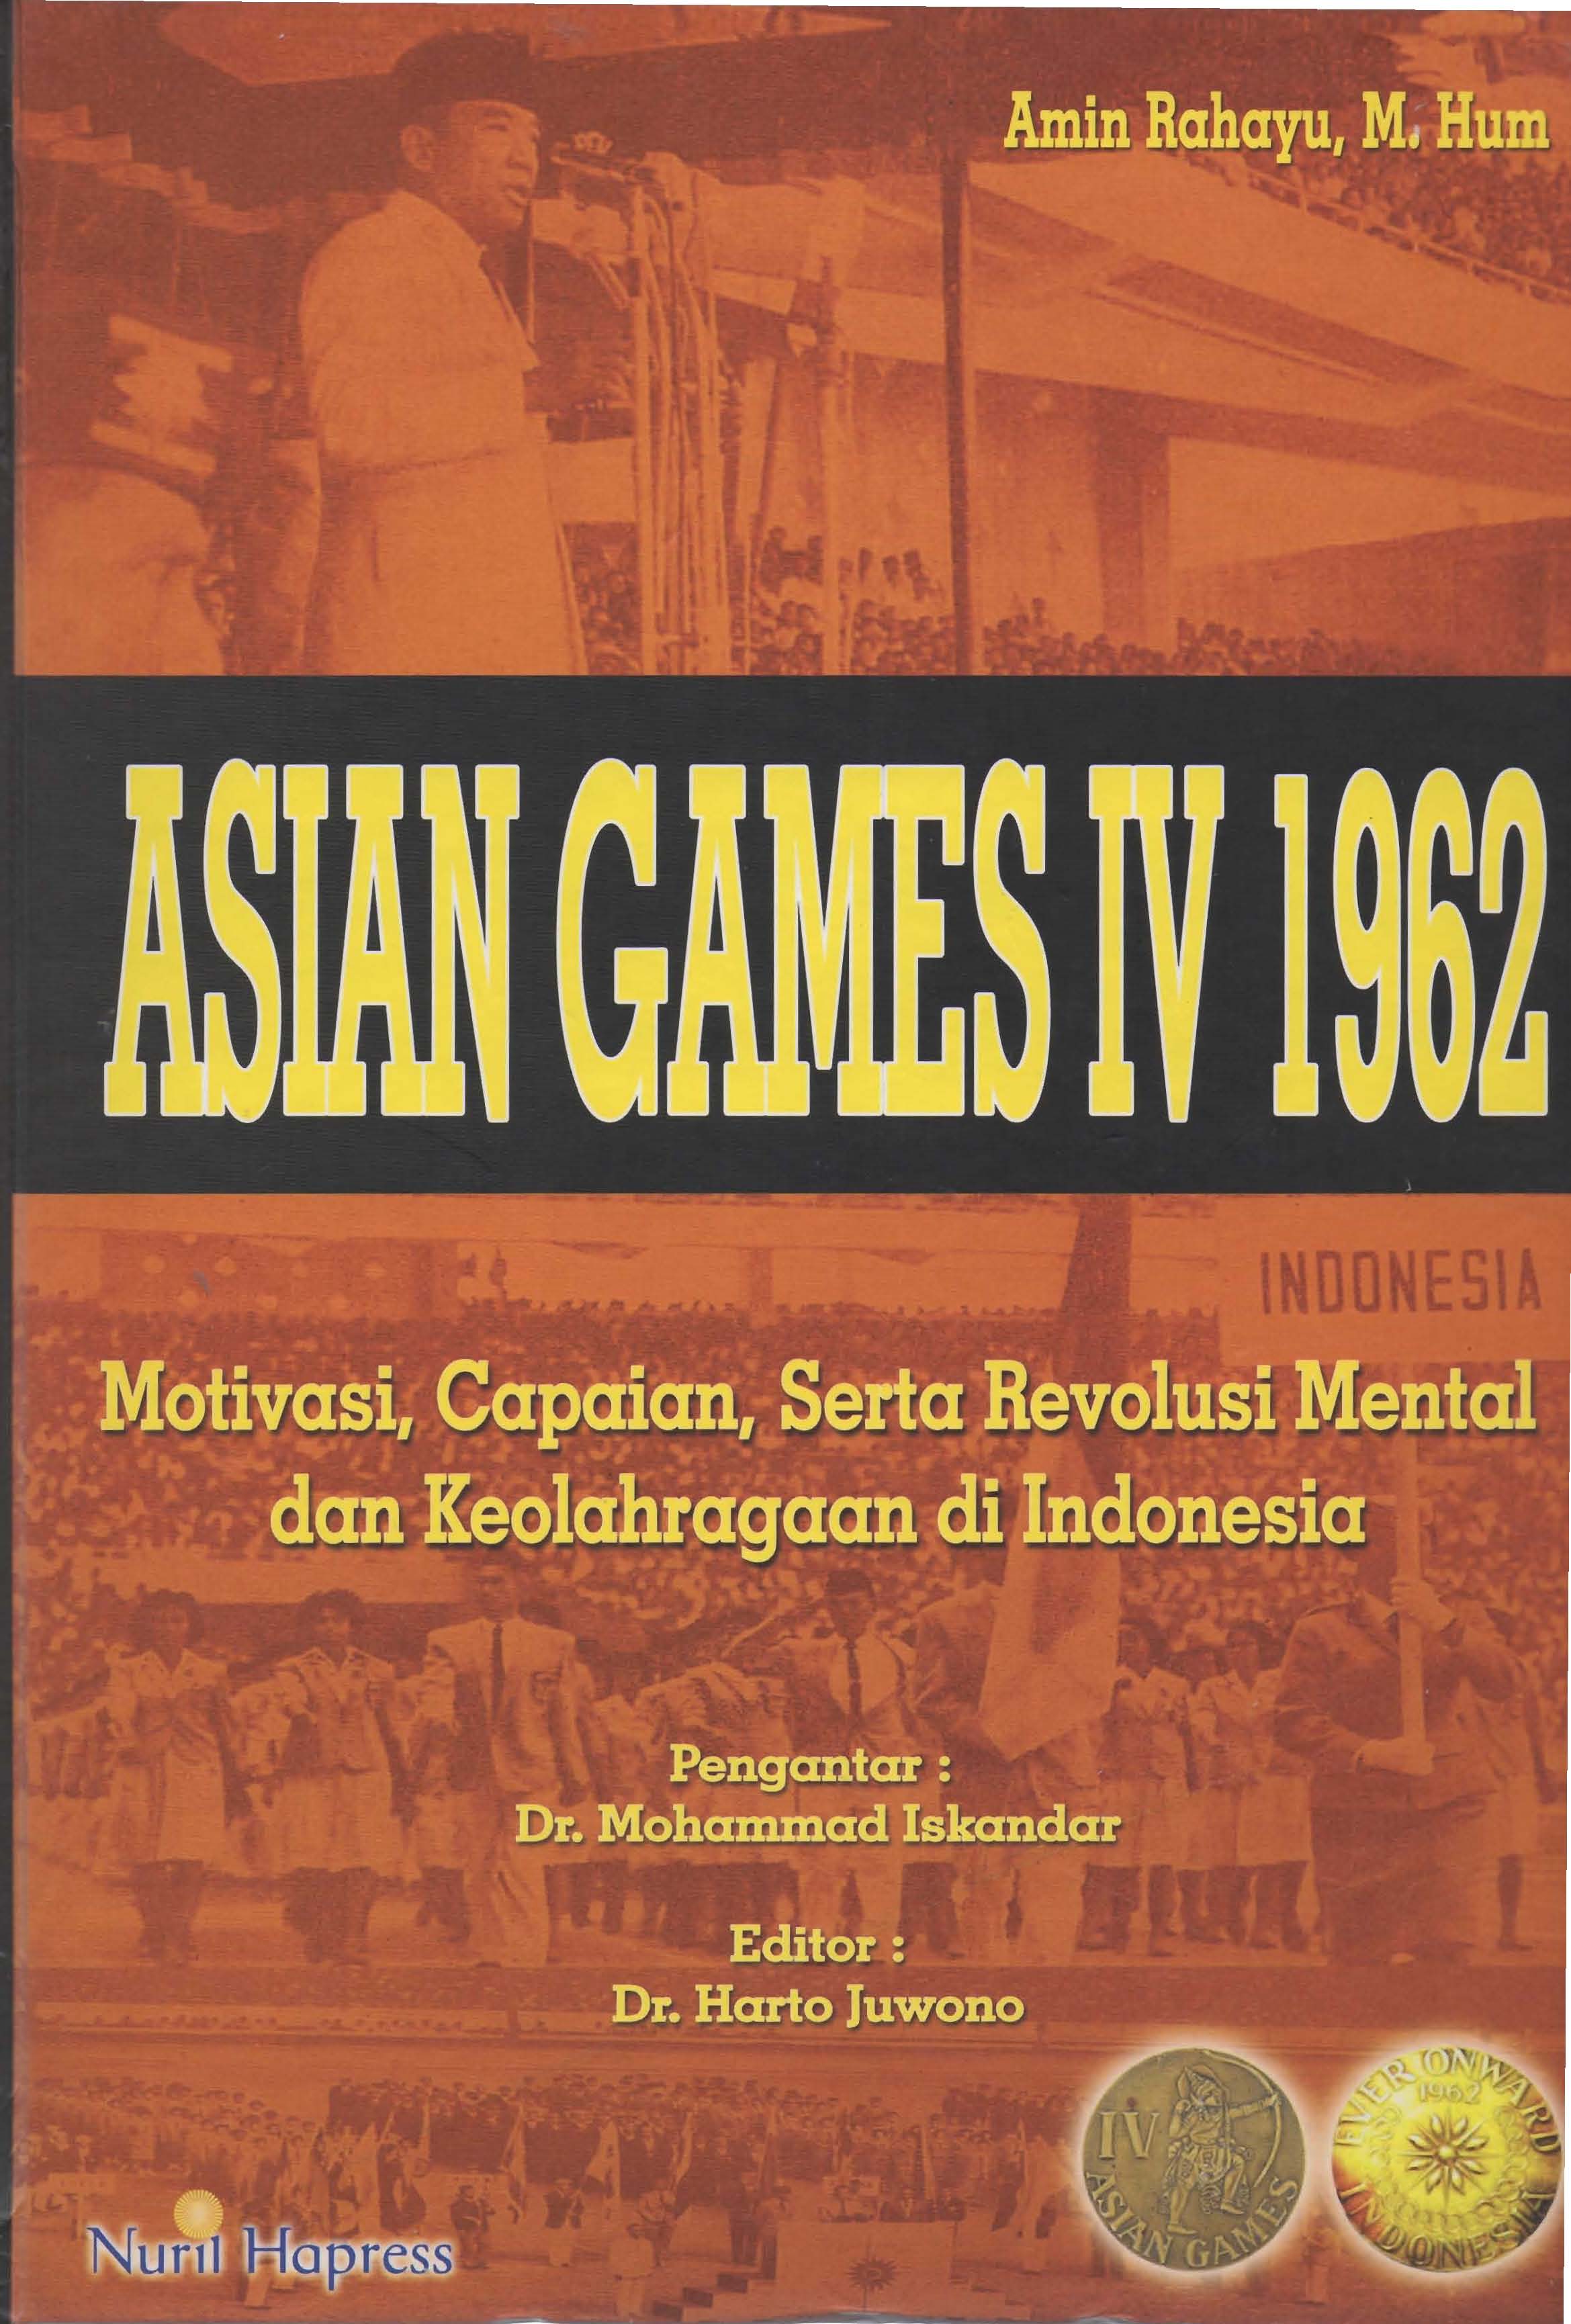 Asian Games IV 1962 : Motivasi, Capaian Serta Revolusi Mental dan Keolahragaan di Indonesia